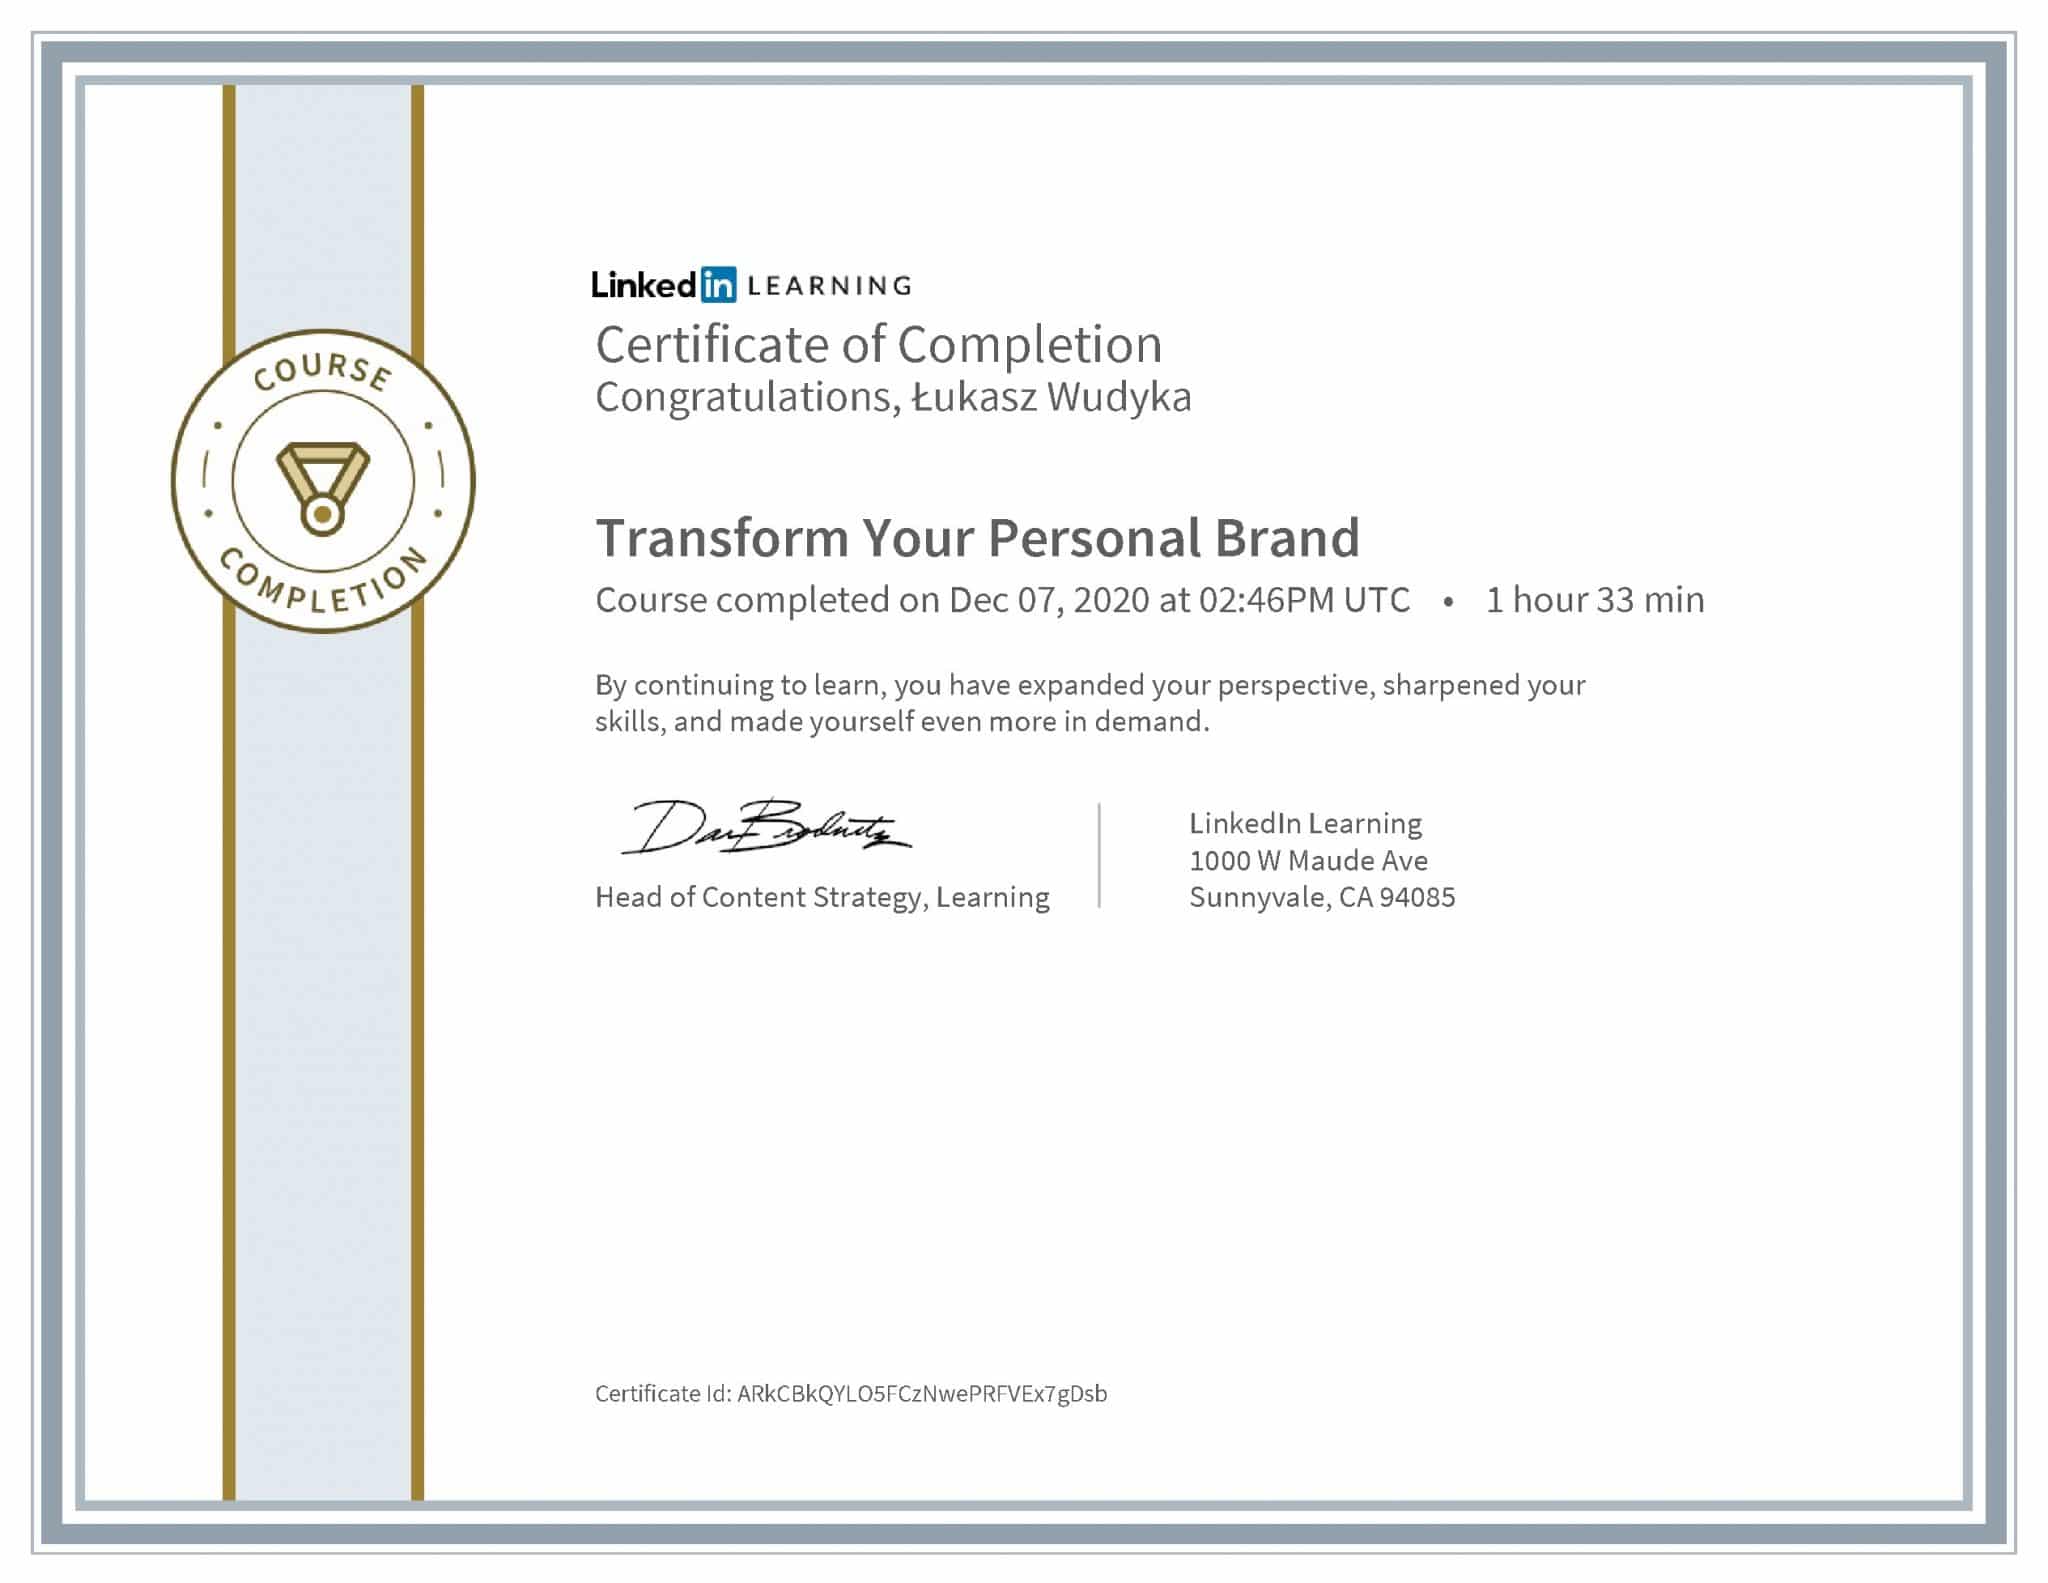 Łukasz Wudyka certyfikat LinkedIn Transform Your Personal Brand